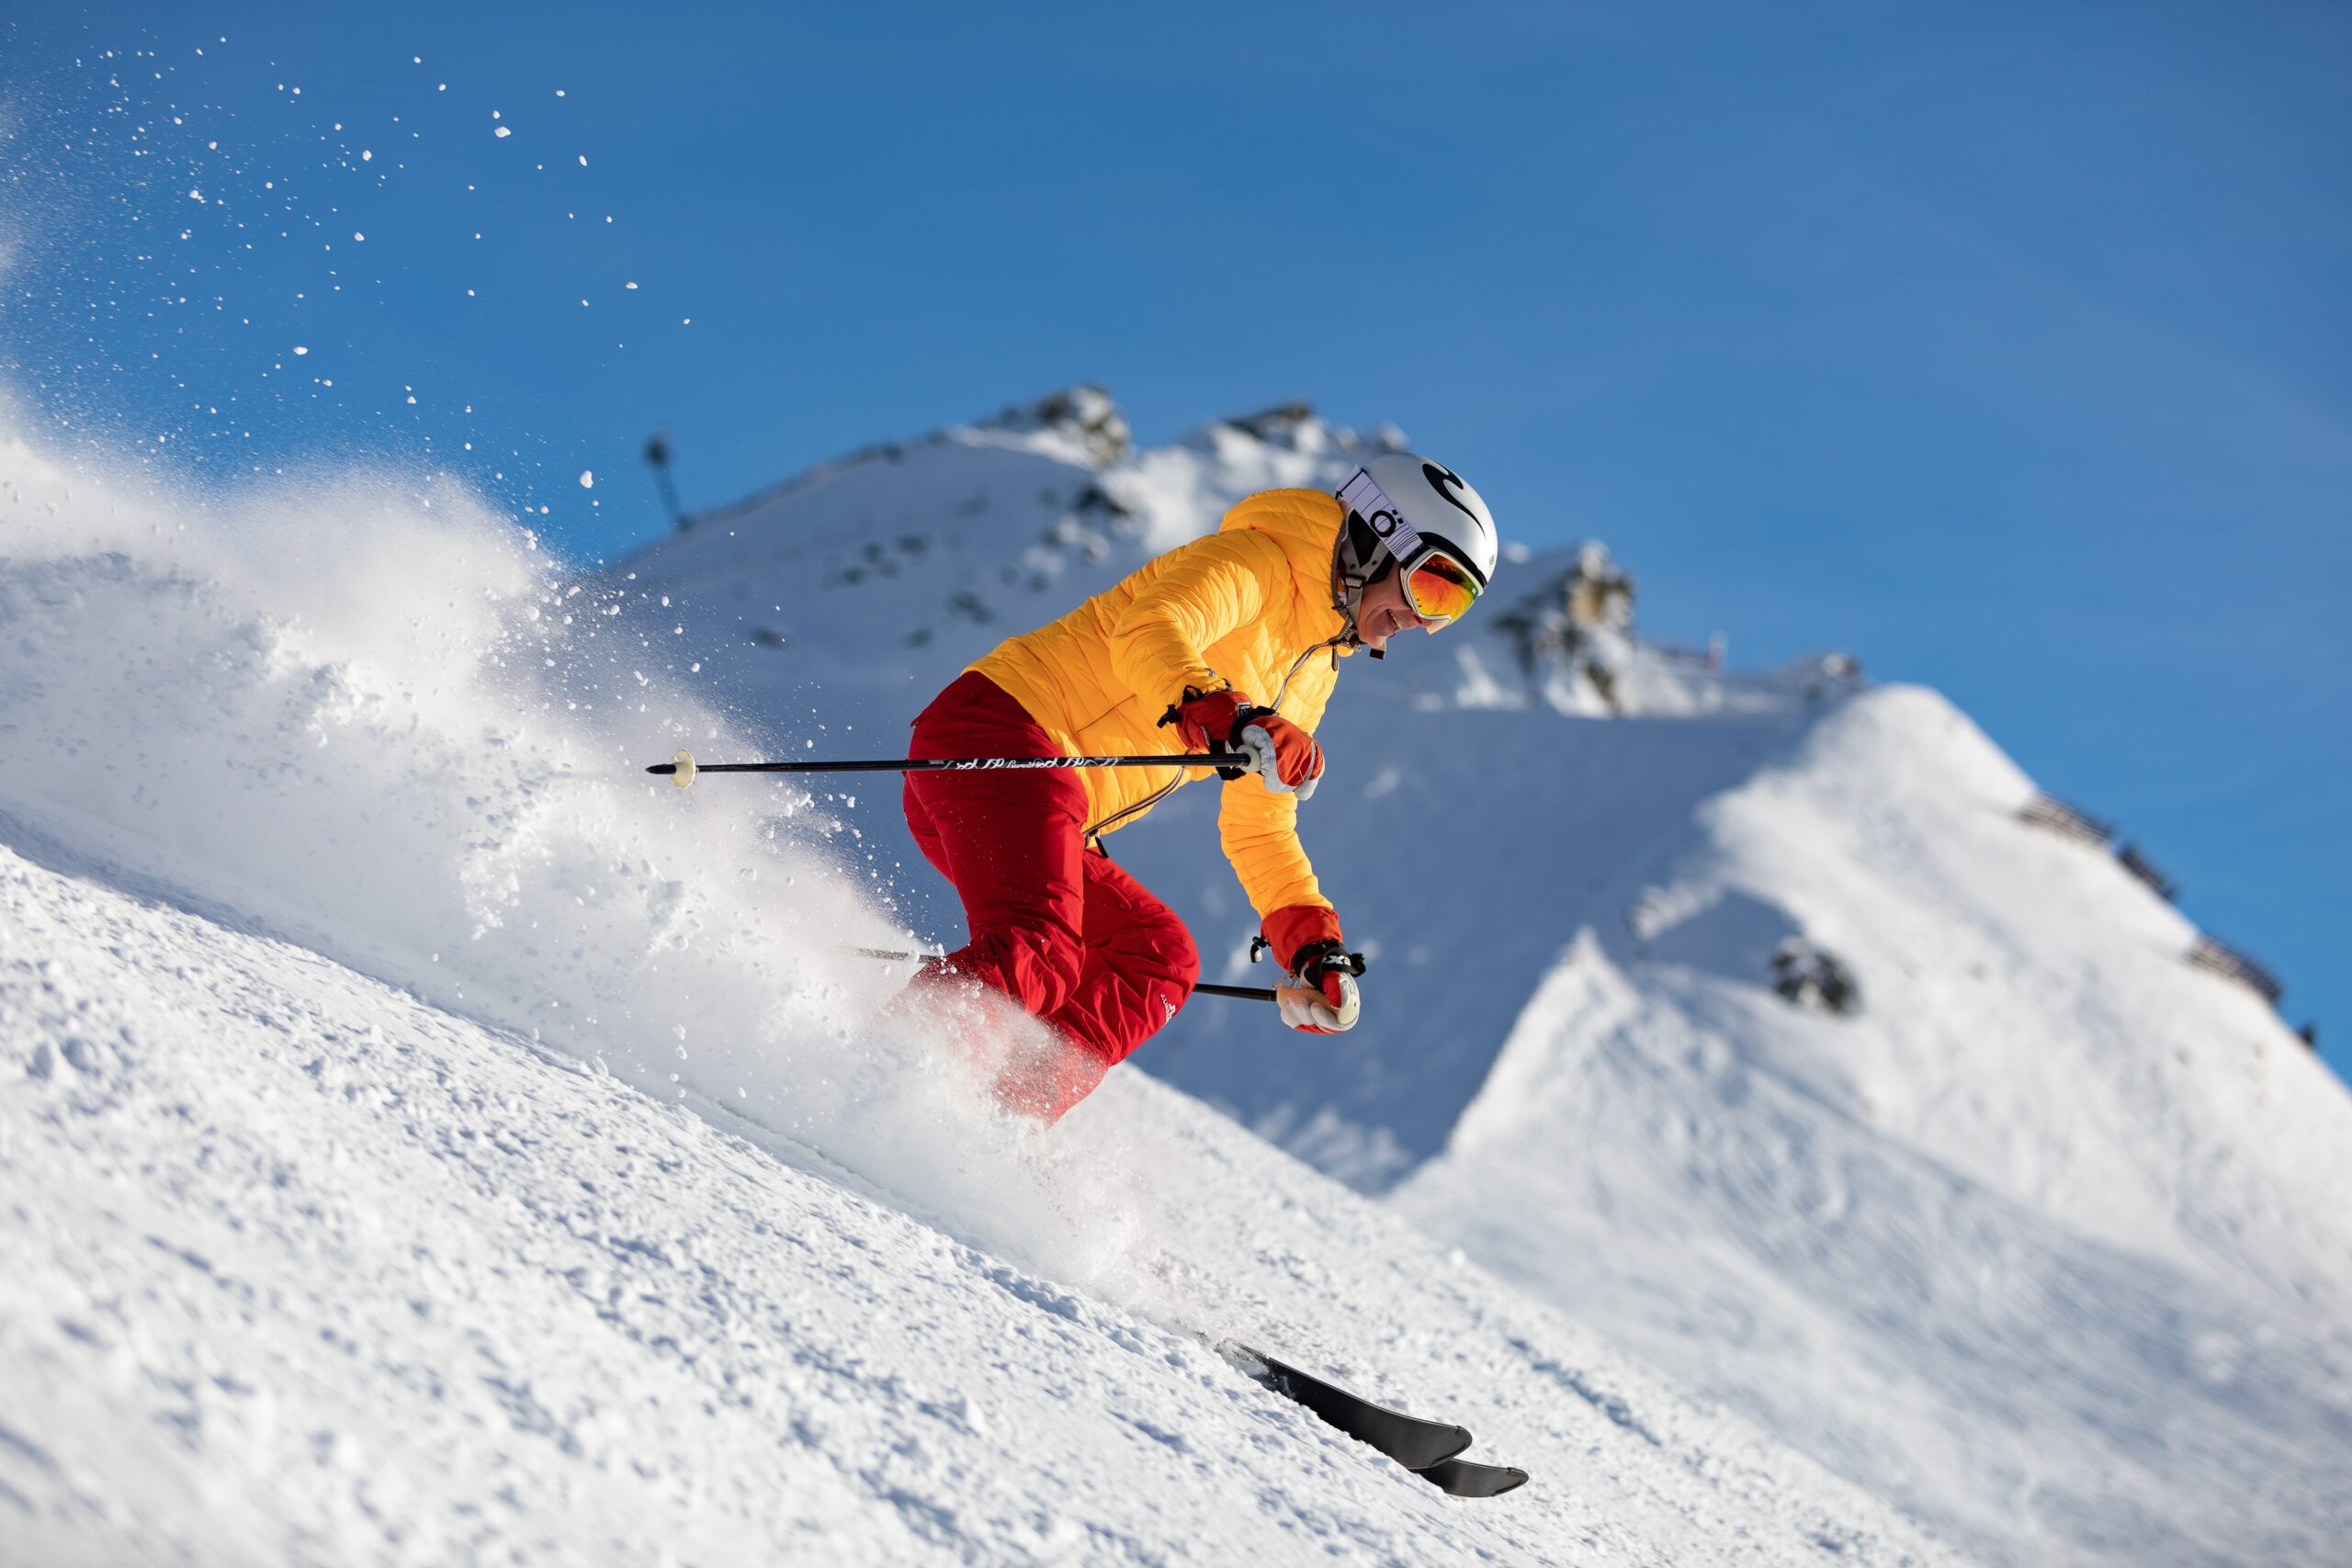 Anmeldung zum Ski- & Snowboardkurs